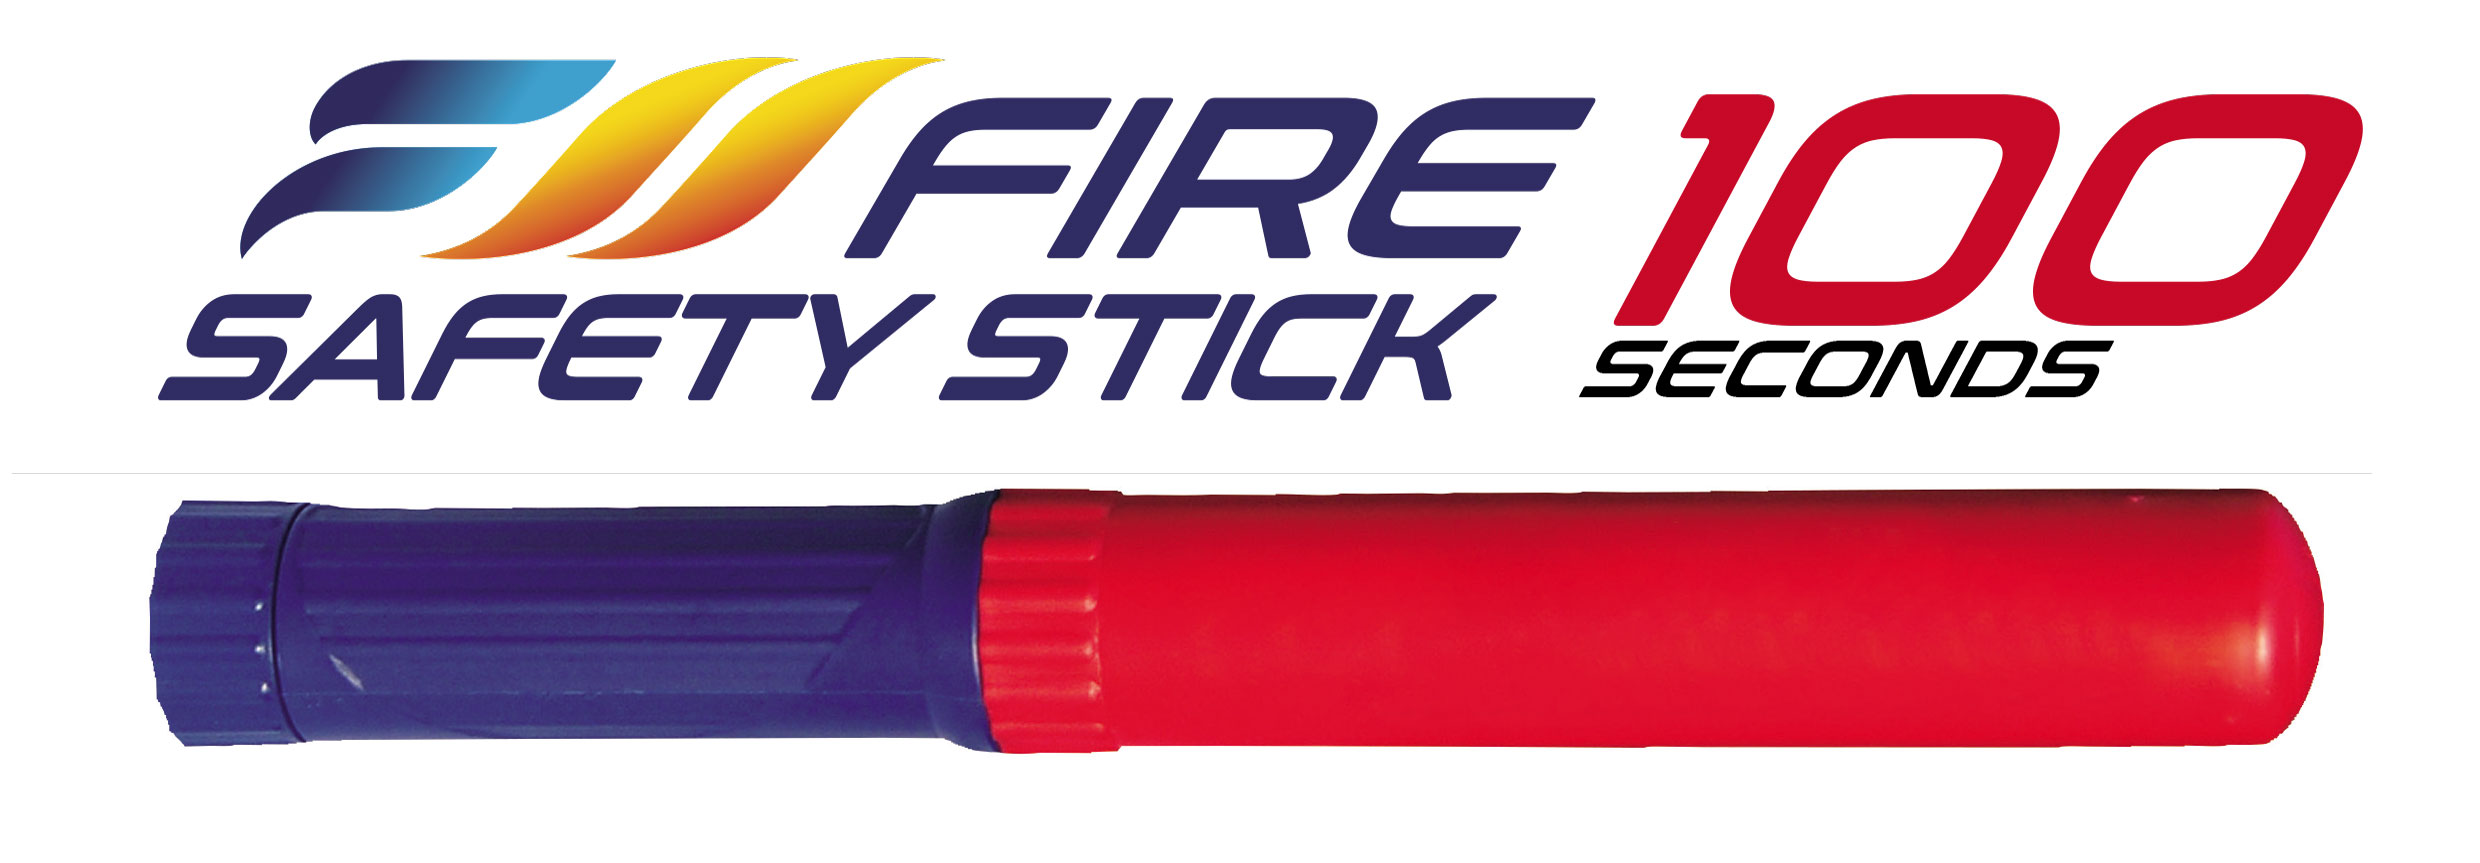 100 second Fire Safety Stick